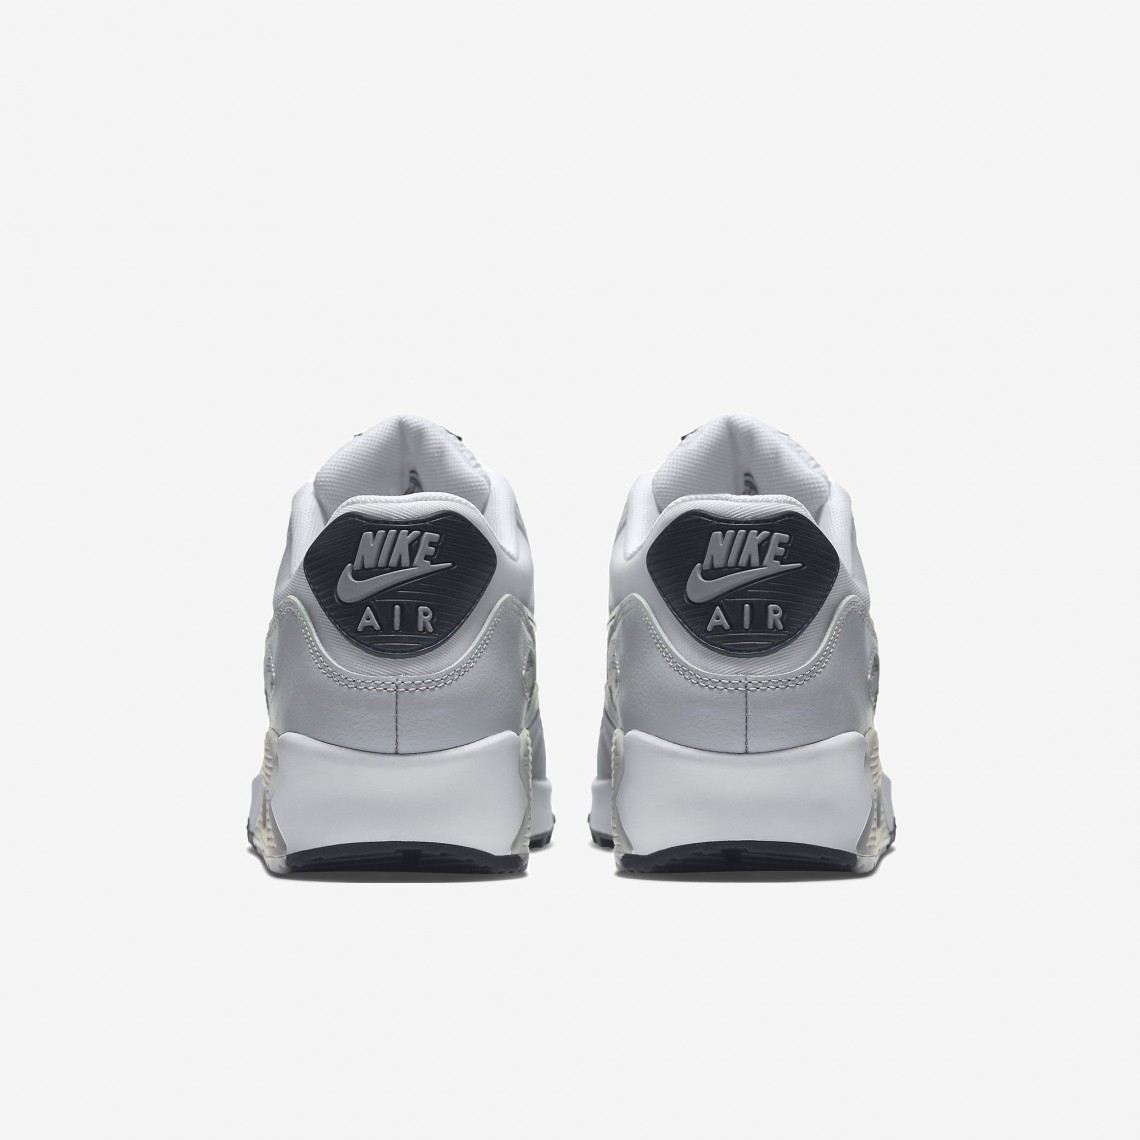 Nike Air Max 90 Essential vit svart grå herr- och damskor 90 616730-111